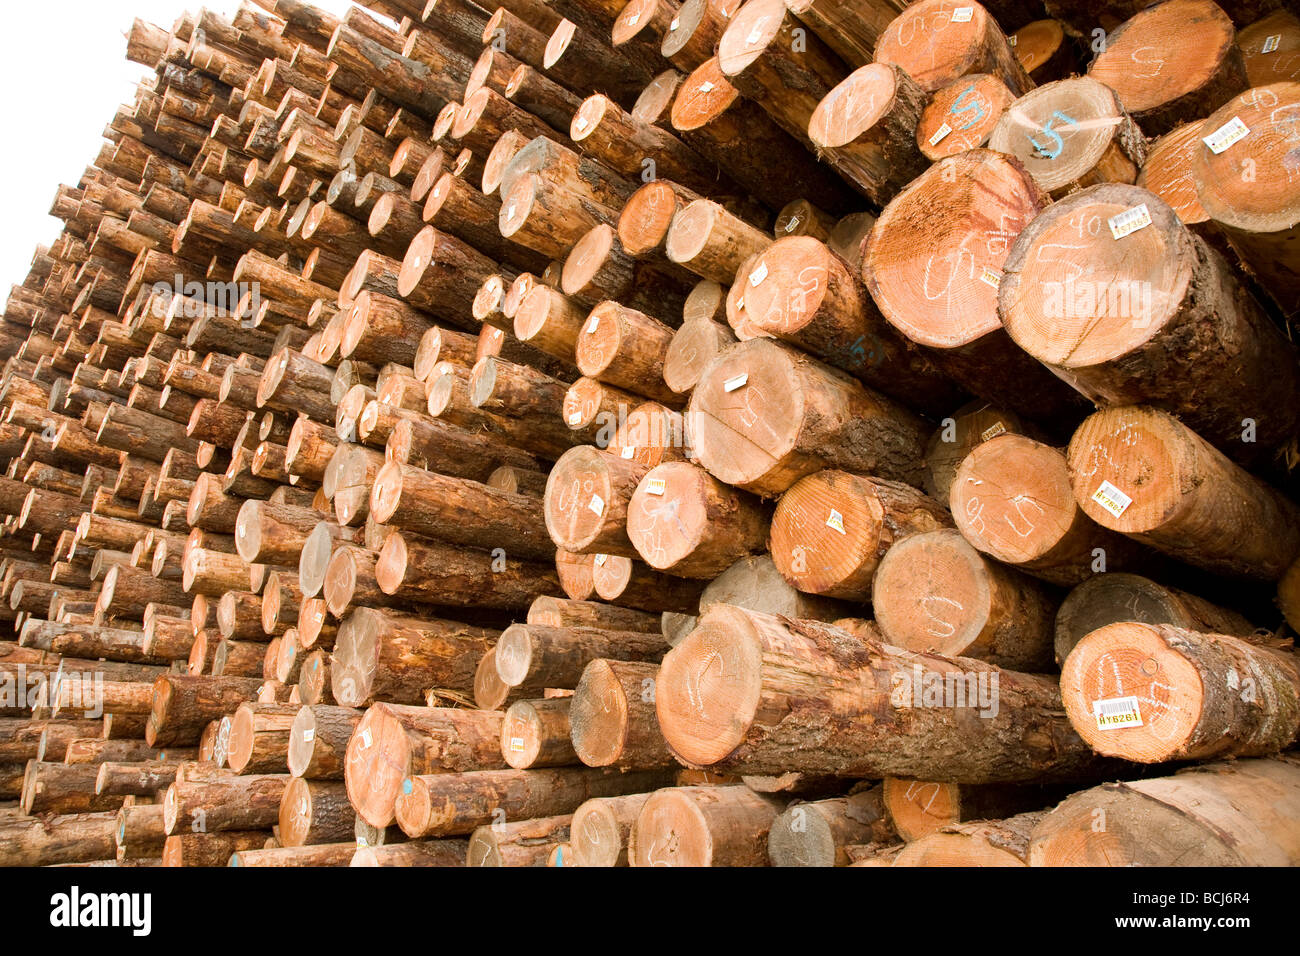 Stacks of logs at lumber mill Eureka California USA Stock Photo